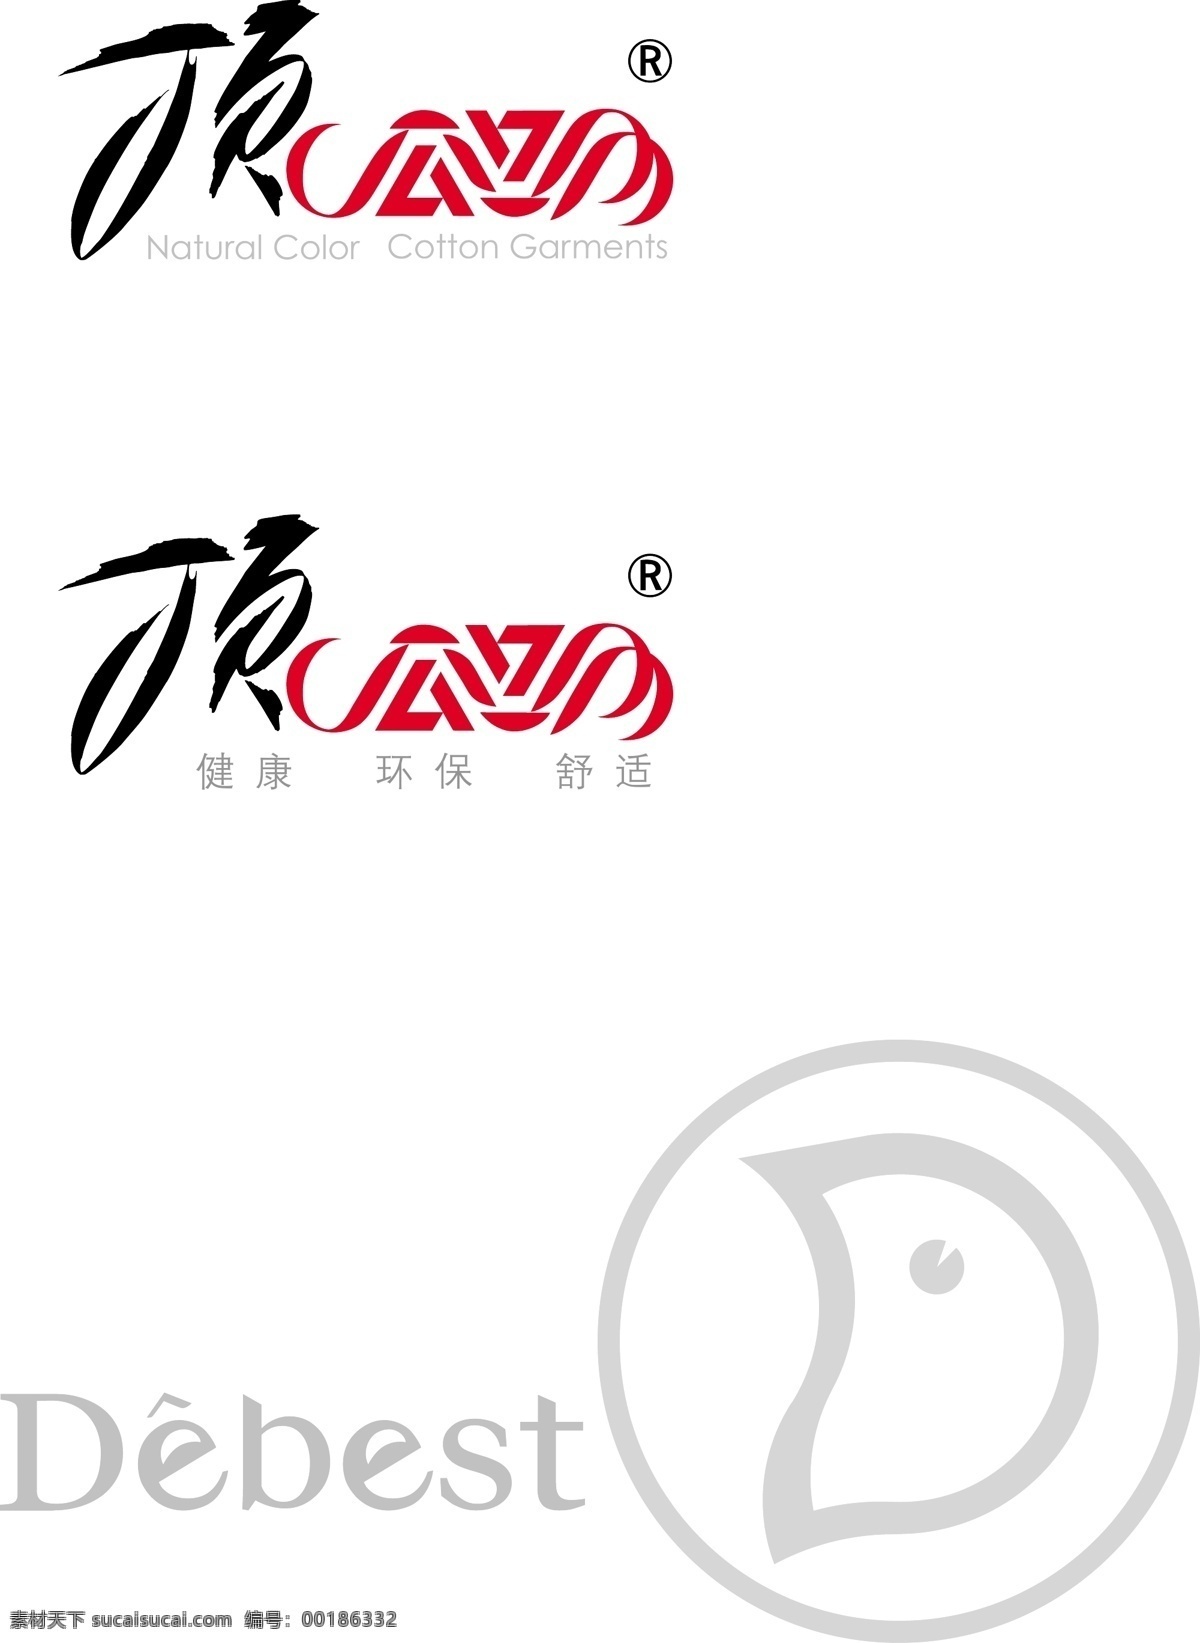 顶呱呱 logo 矢量图 标志设计 logo设计 标志 debest 矢量模版下载 白色